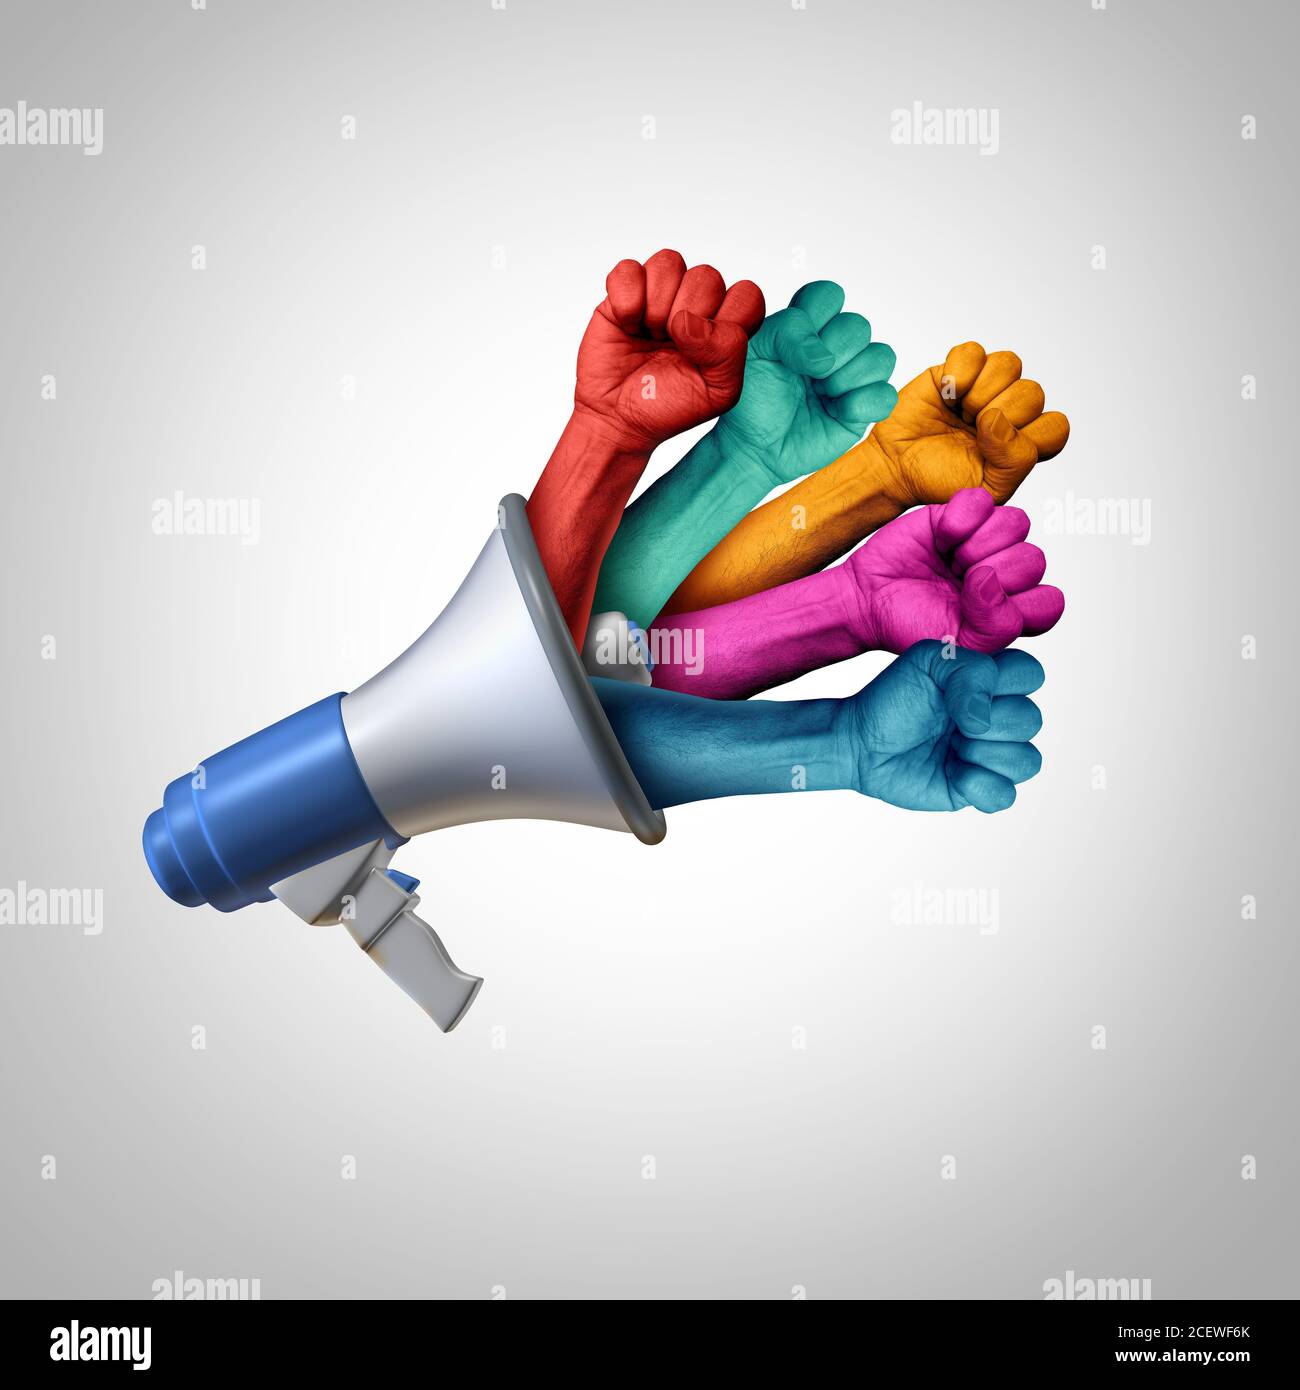 Messaggio sui diritti sociali e comunicazione sulla giustizia per l'uguaglianza e la democrazia con elementi di illustrazione 3D. Foto Stock